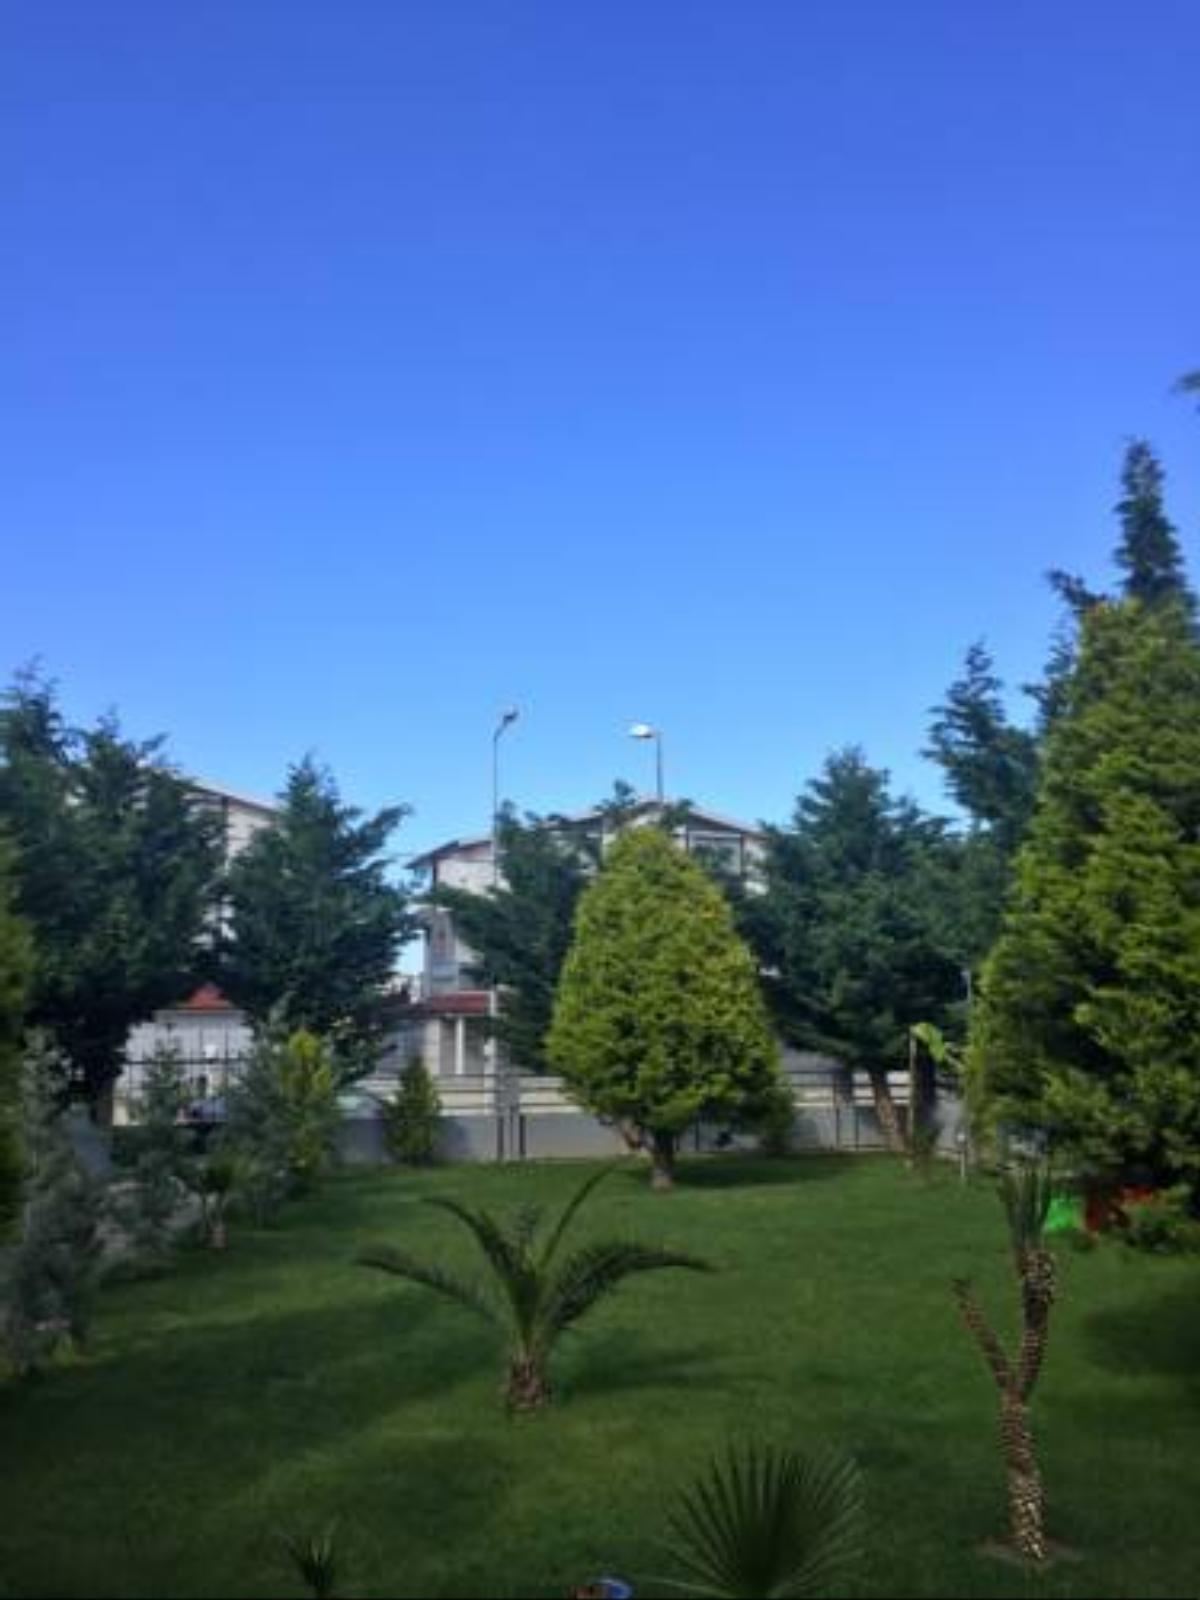 Tuna Villa Hotel Guzelcamlı Turkey